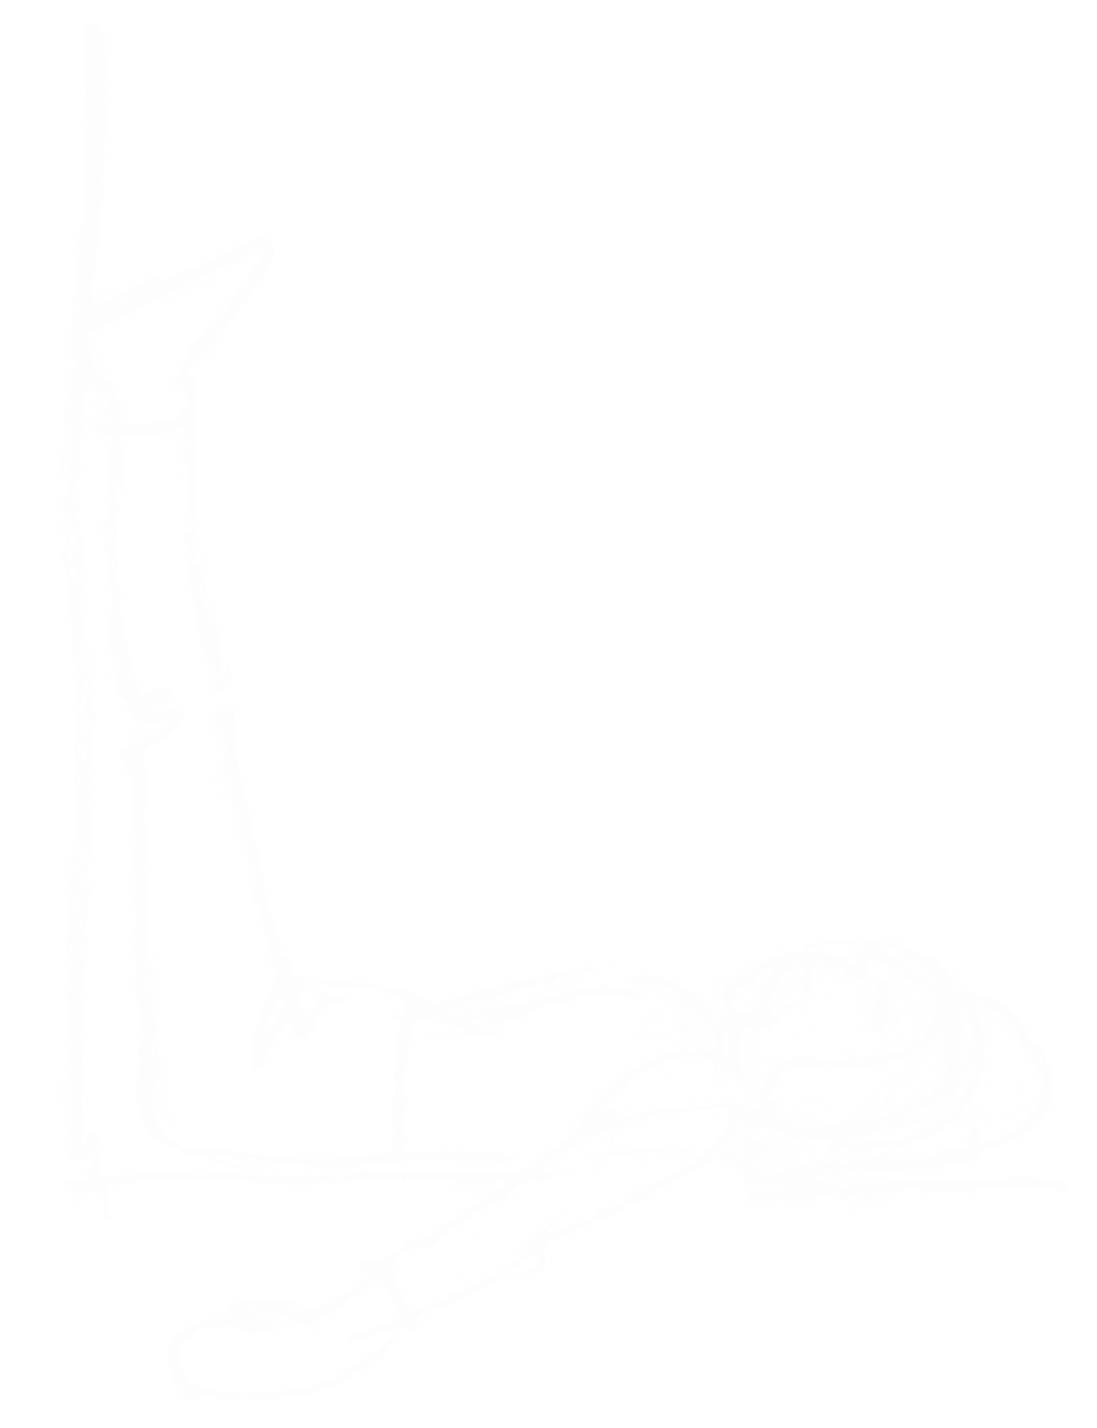 Håndtegnet illustration af en person i yogastilling